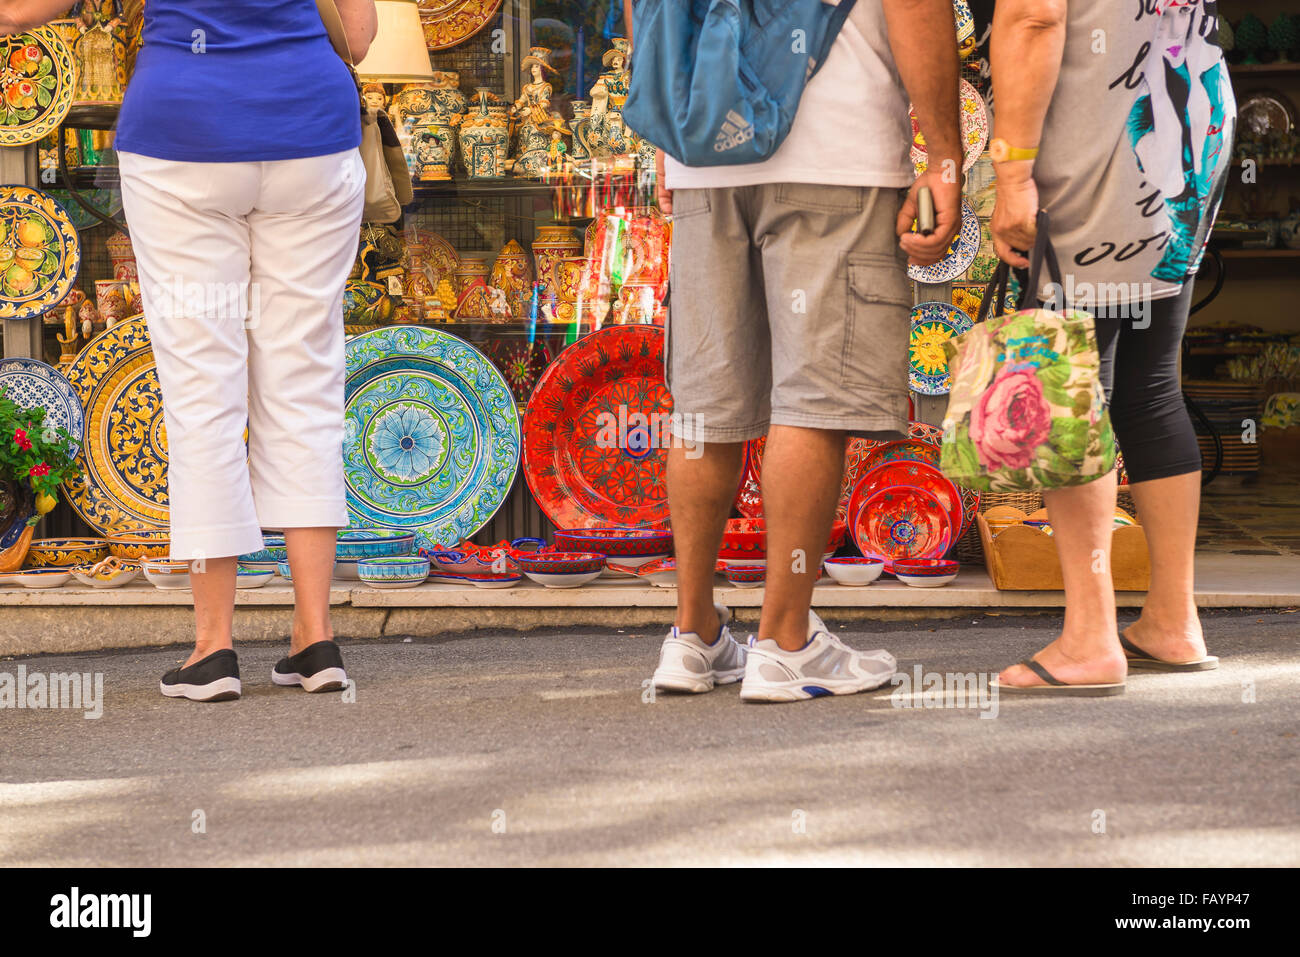 Les touristes shopping Sicile, vue arrière de touristes dans une rue de Taormine s'arrêter pour regarder les plaques de céramique colorée à l'extérieur d'une boutique de souvenirs, en Sicile. Banque D'Images